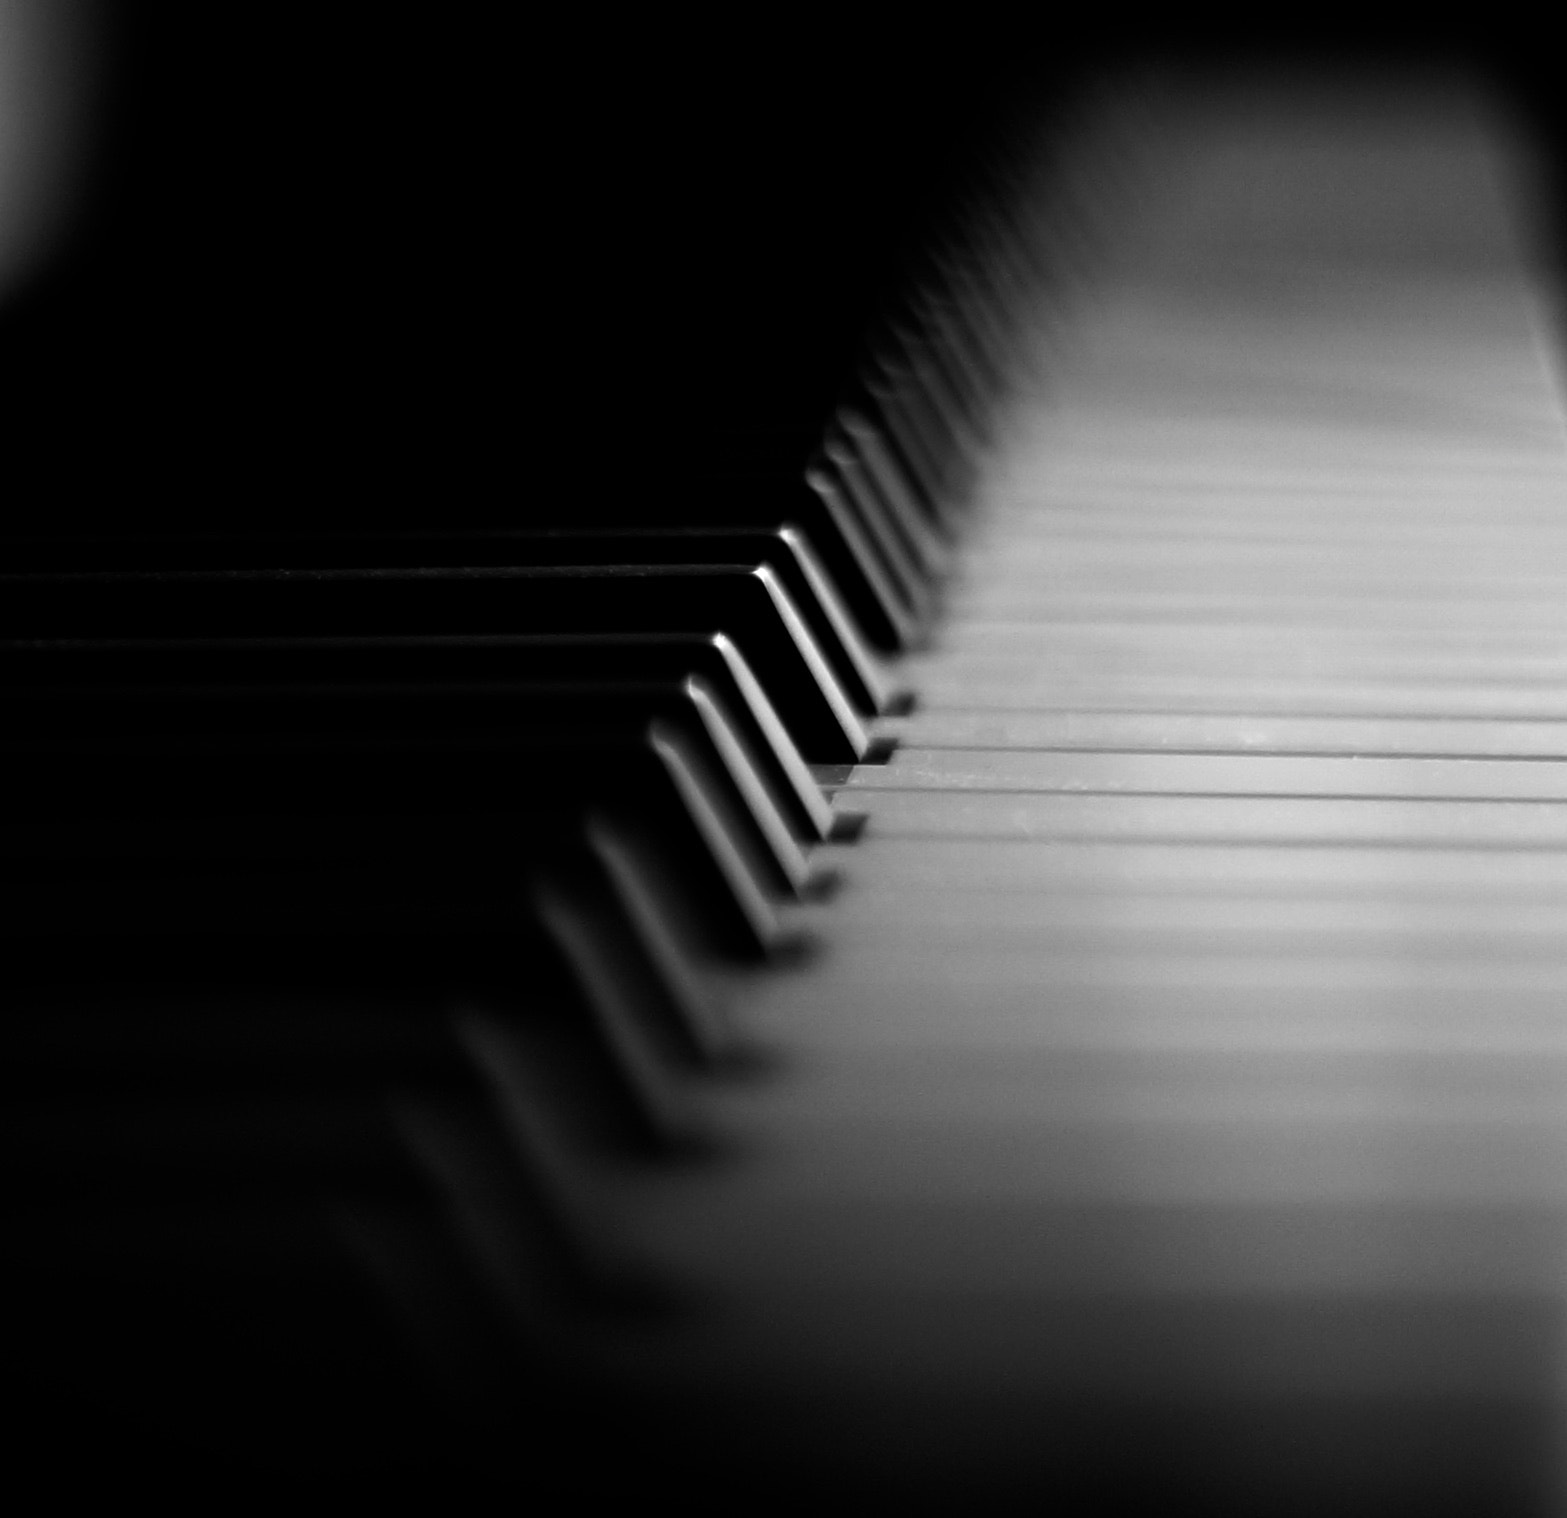 Sony SLT-A57 sample photo. Piano keys photography